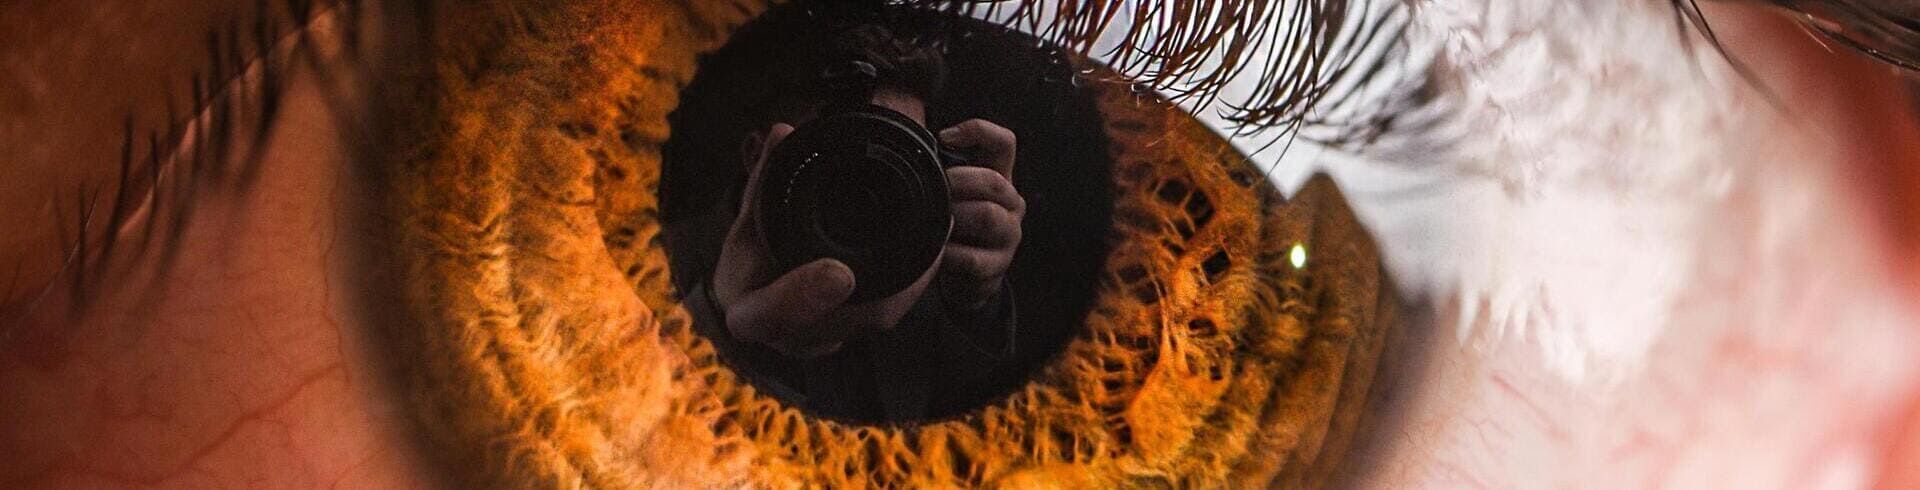 Photographie d'iris : l'art de sublimer la beauté des yeux